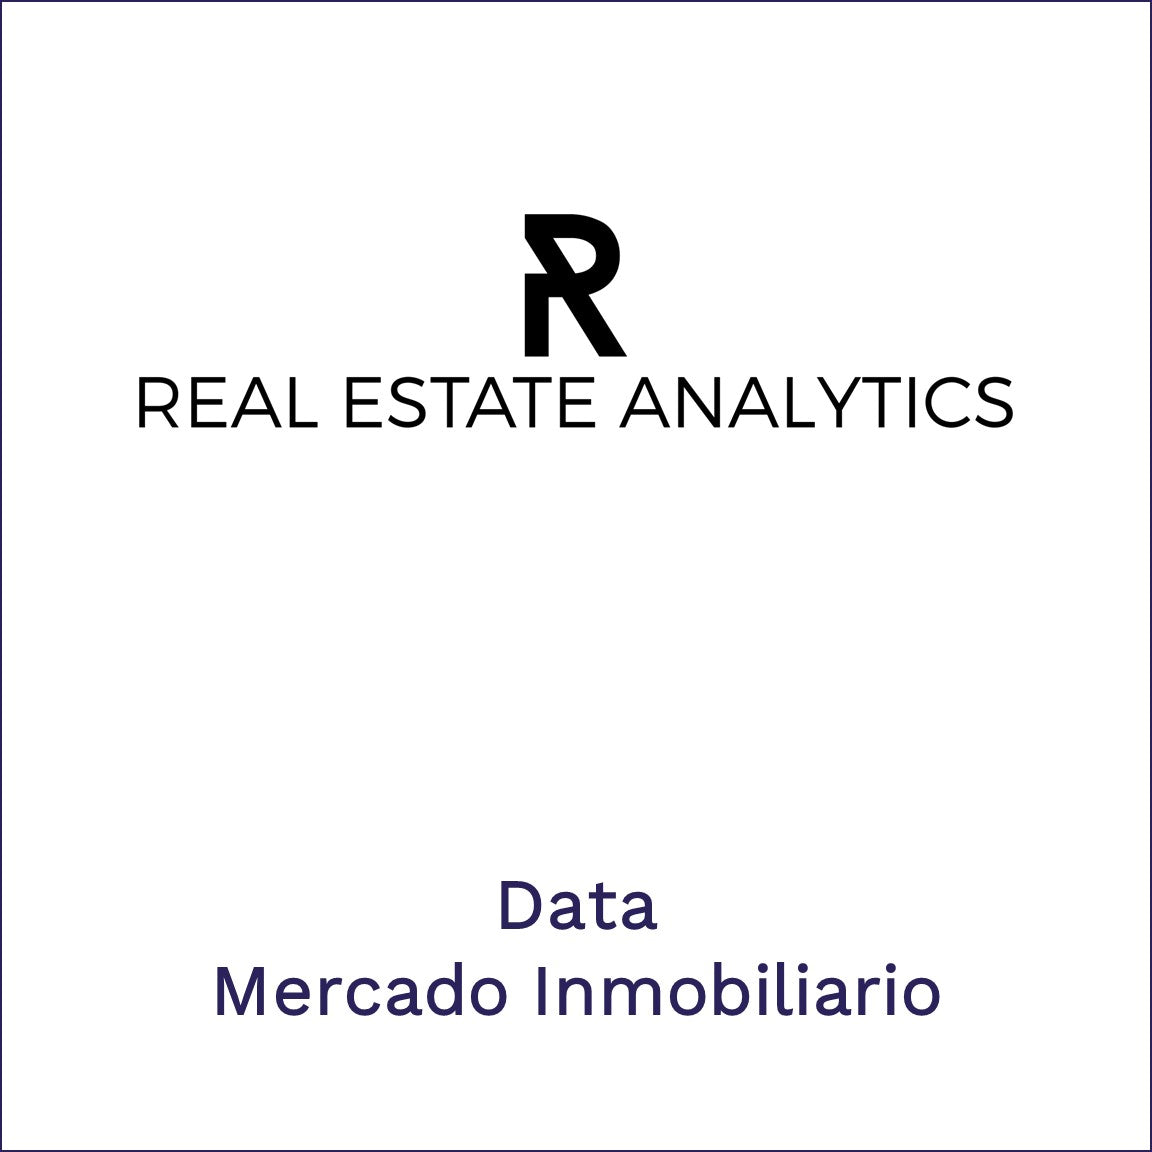 Real Estate Analytics | Data Mercado Inmobiliario